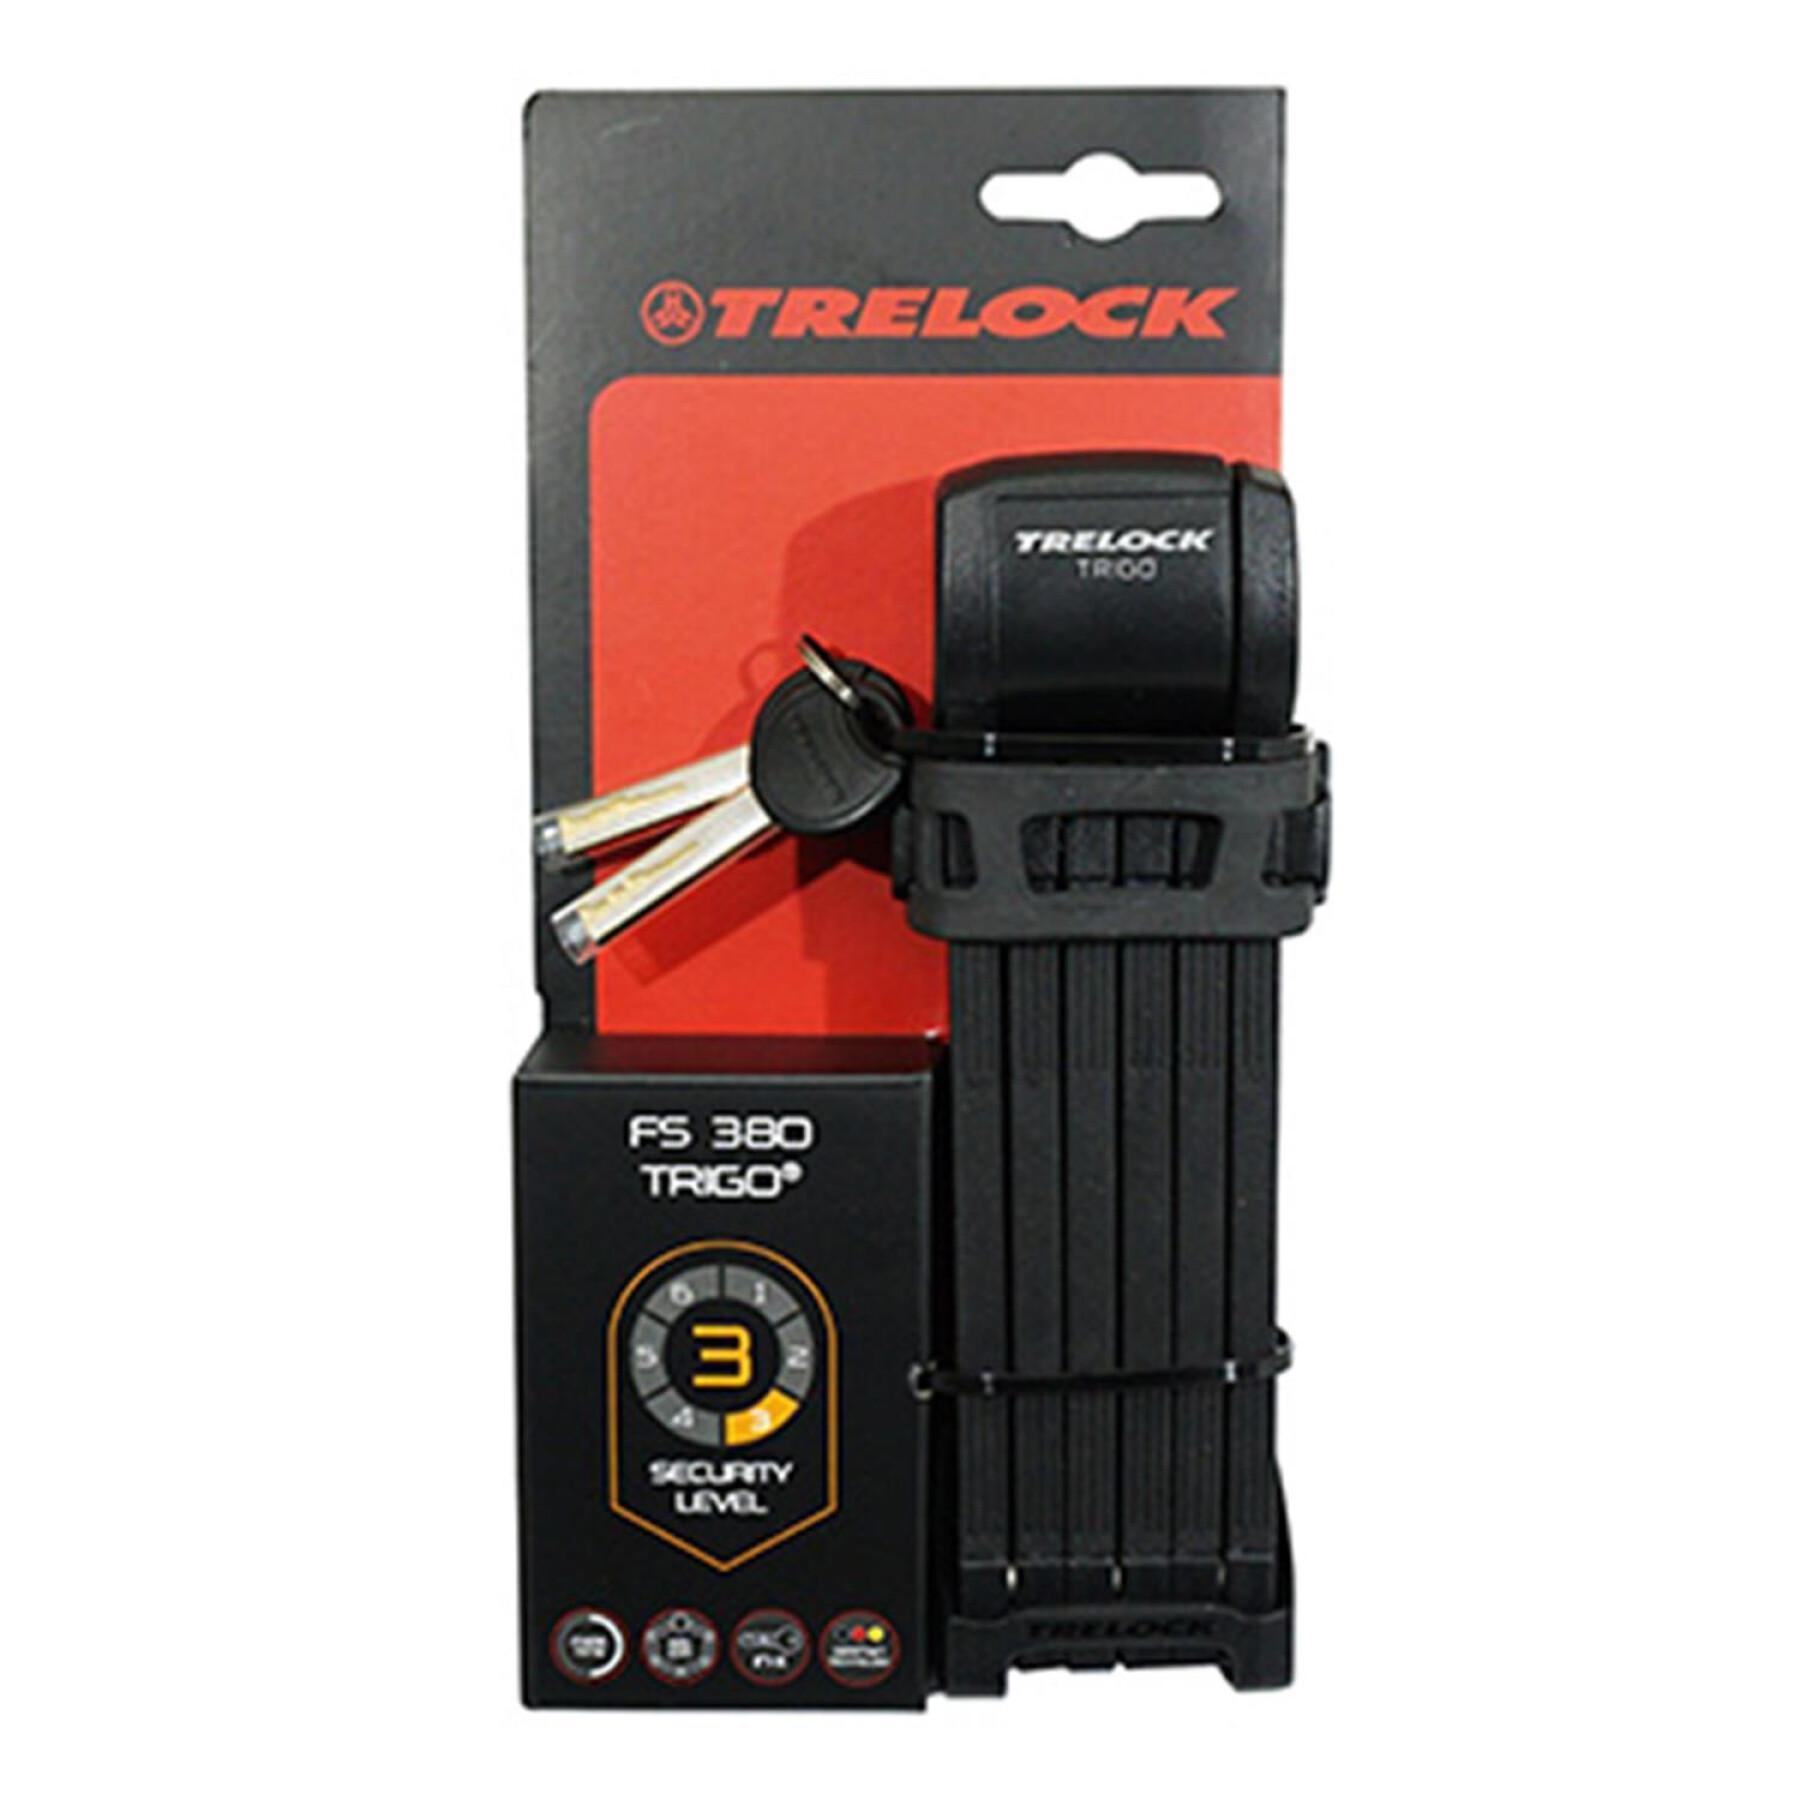 Miękki zamek składany Trelock Trigo + support FS300 85 cm